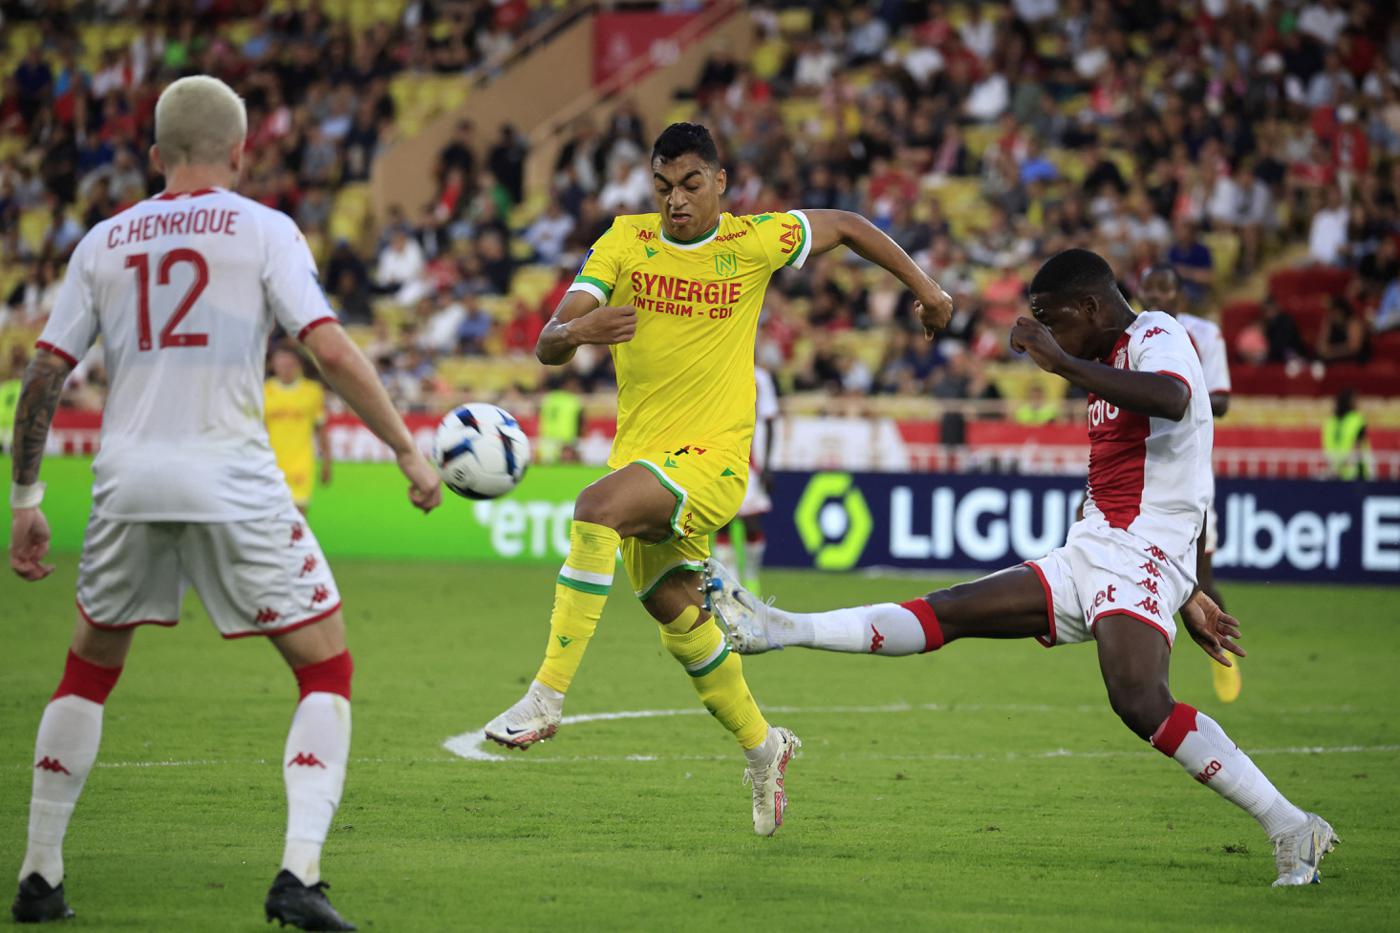 Nantes - Monaco - 2:2. Französische Meisterschaft, 30. Runde. Spielbericht, Statistiken